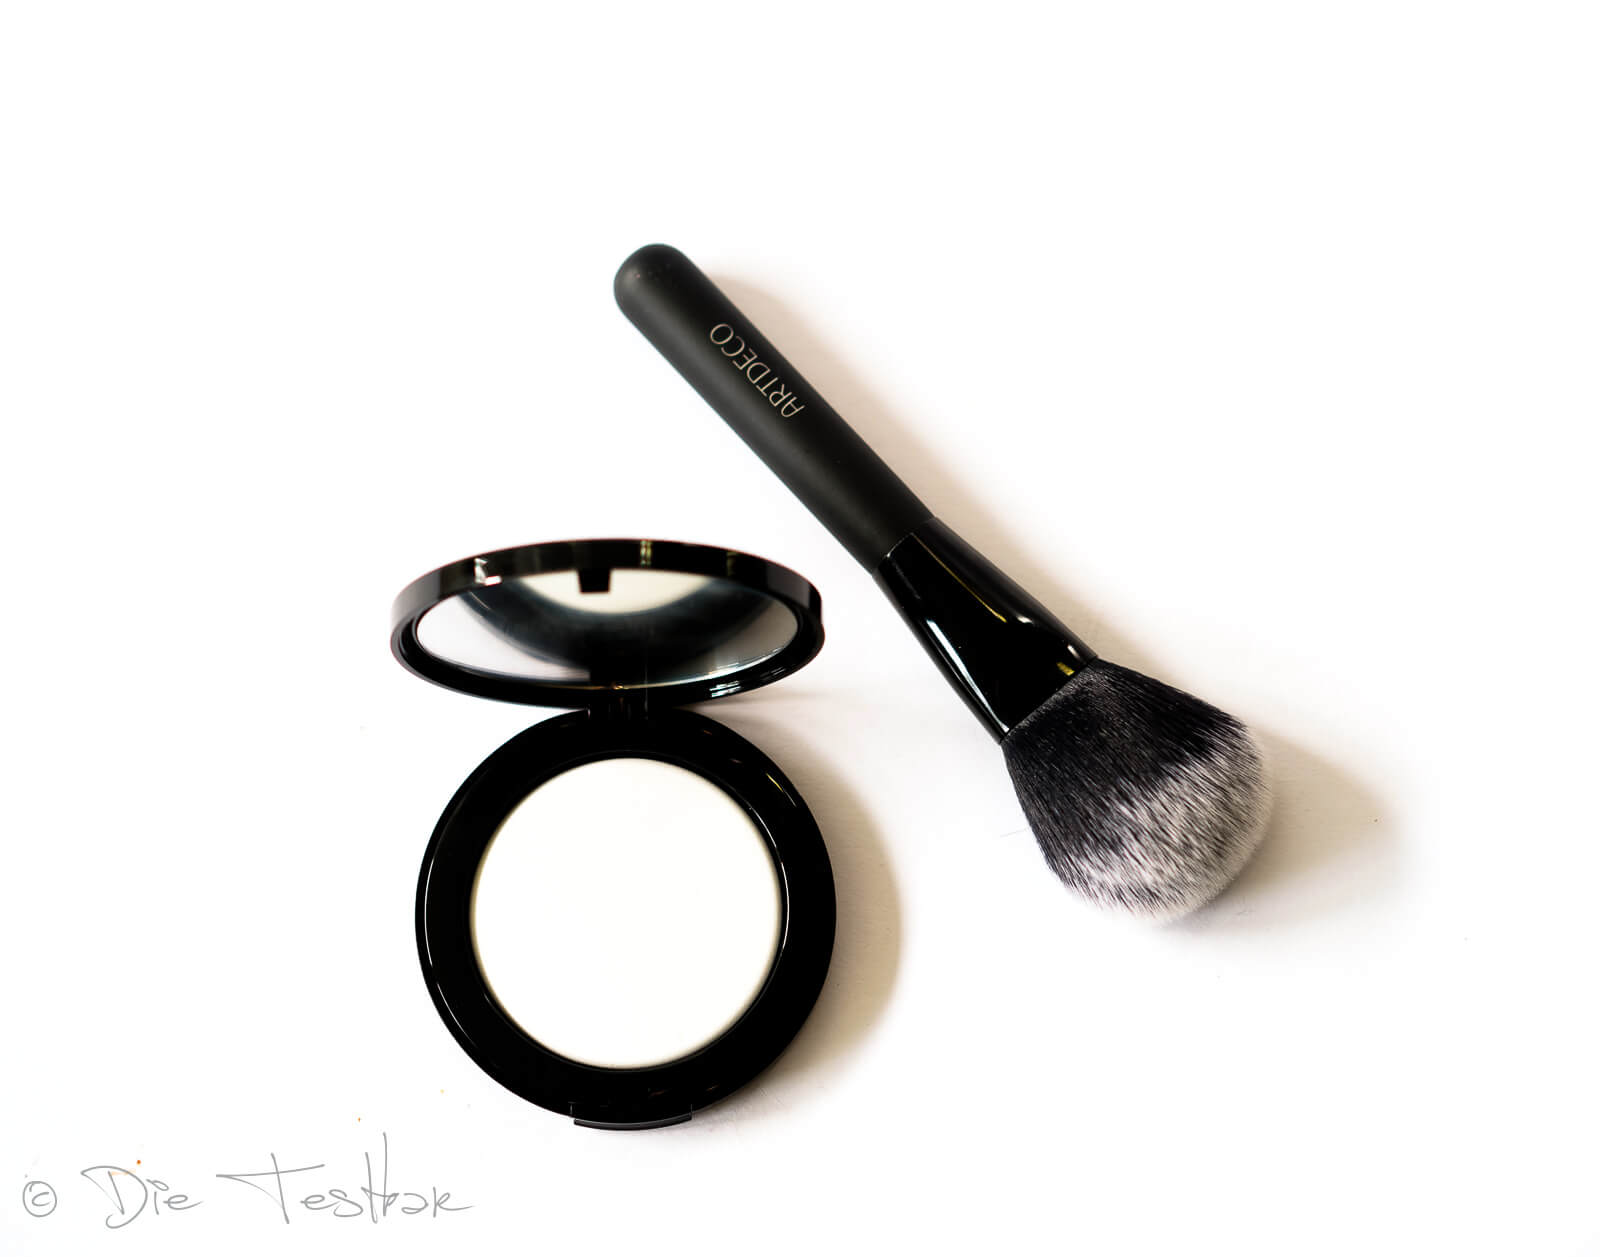 Kosmetik Lieblinge - Make-up und Nagellacke von Artdeco 12